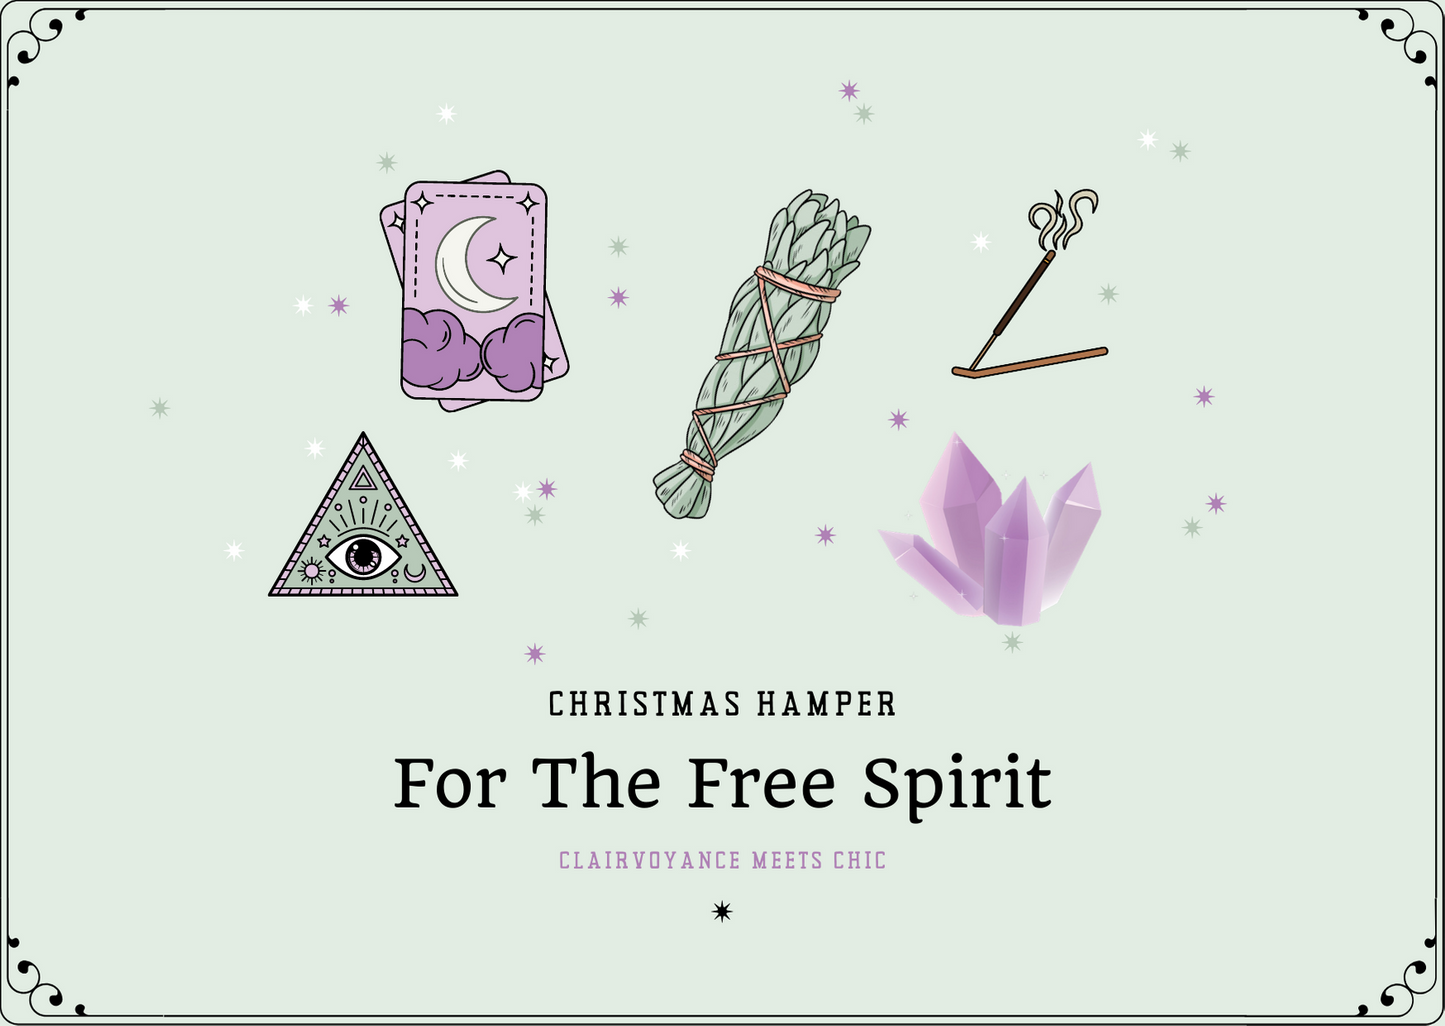 Christmas Hamper For the Free Spirit